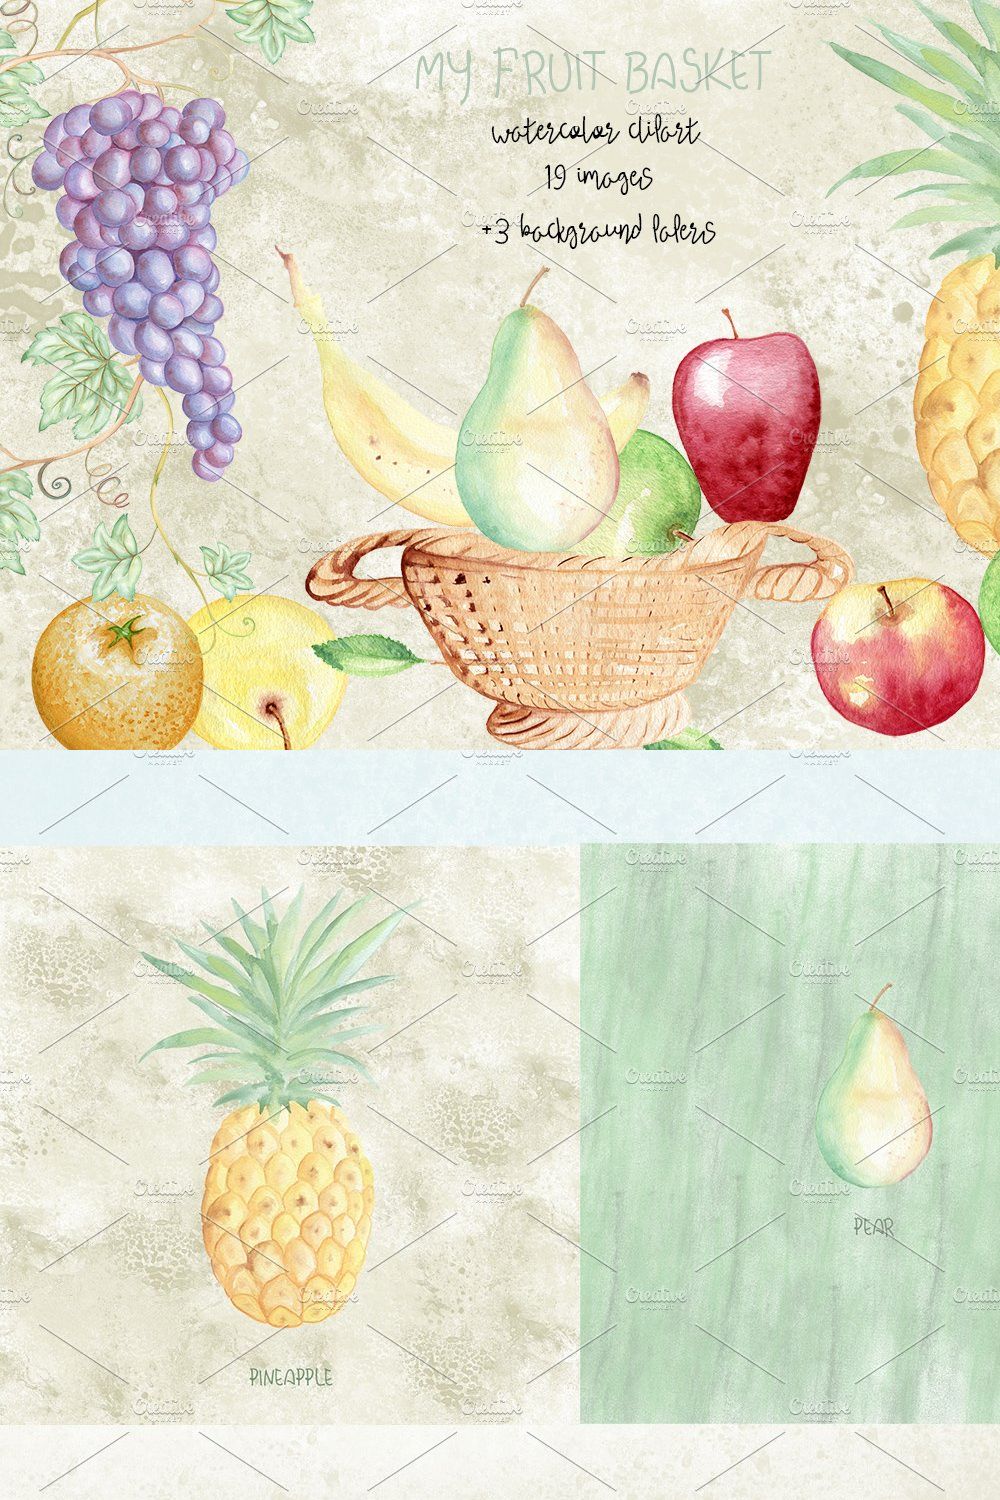 Watercolor fruits elements. Grape pinterest preview image.